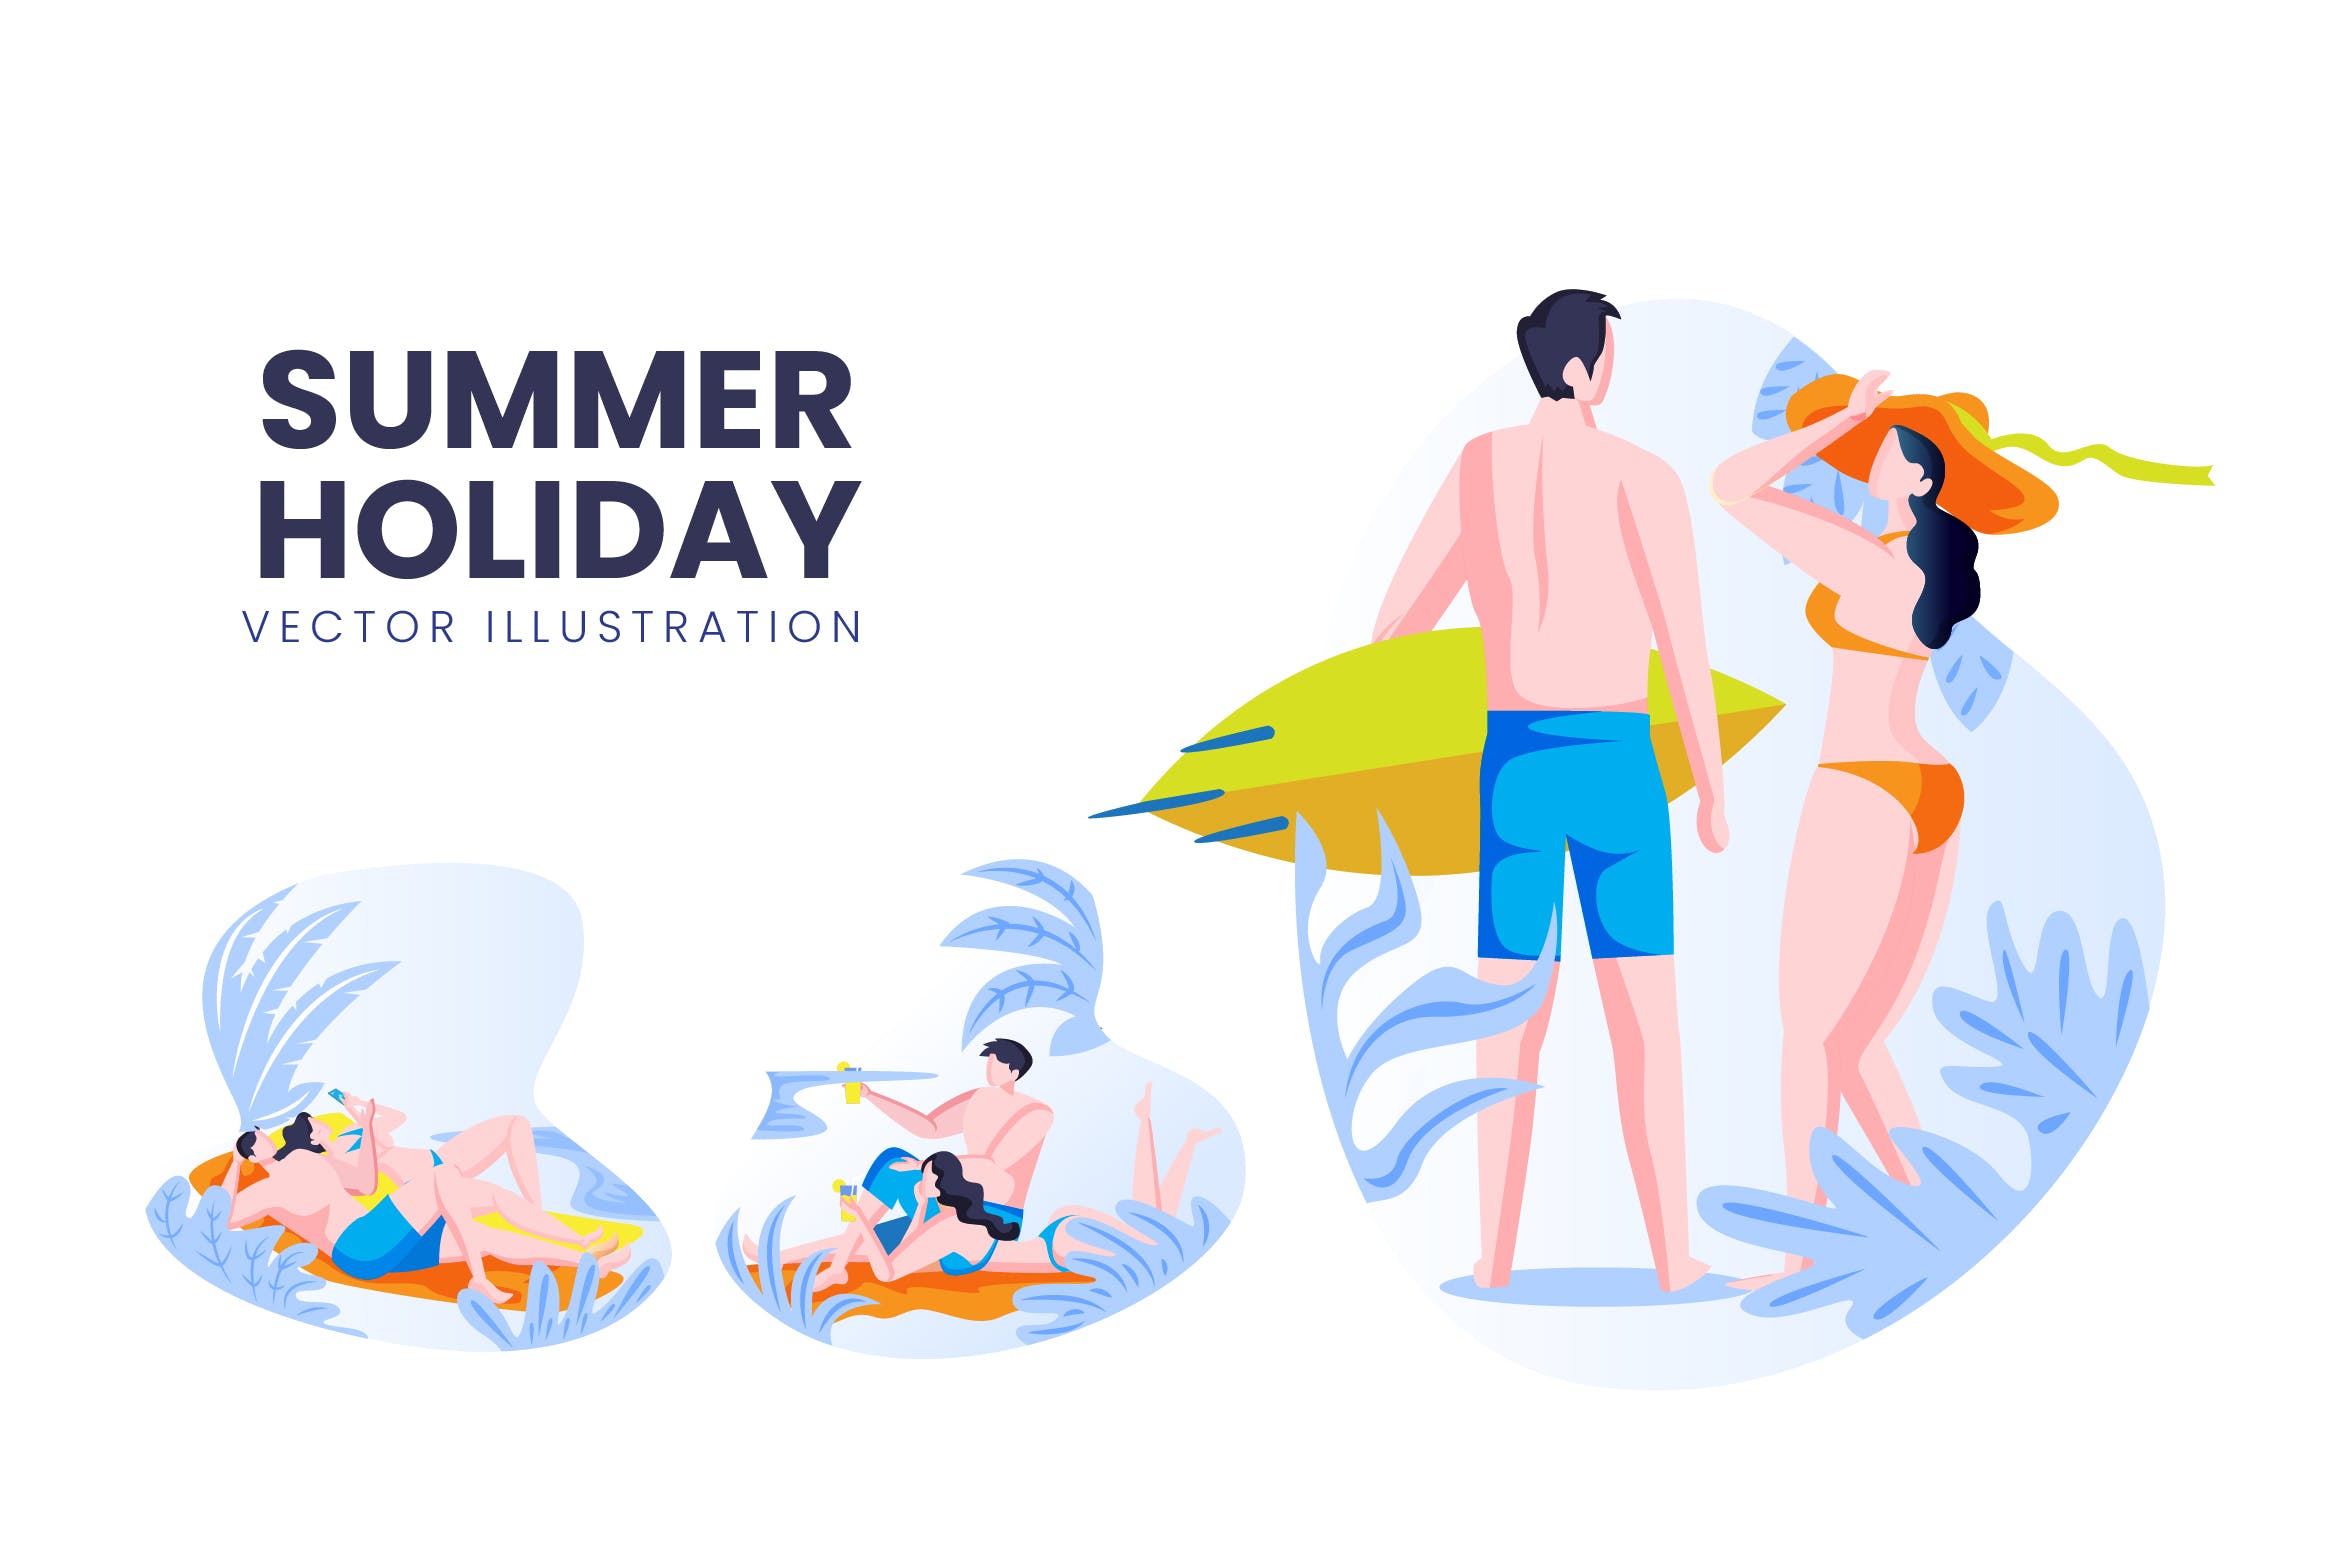 海滩度假主题人物形象蚂蚁素材精选手绘插画矢量素材 Summer Holiday Vector Character Set插图